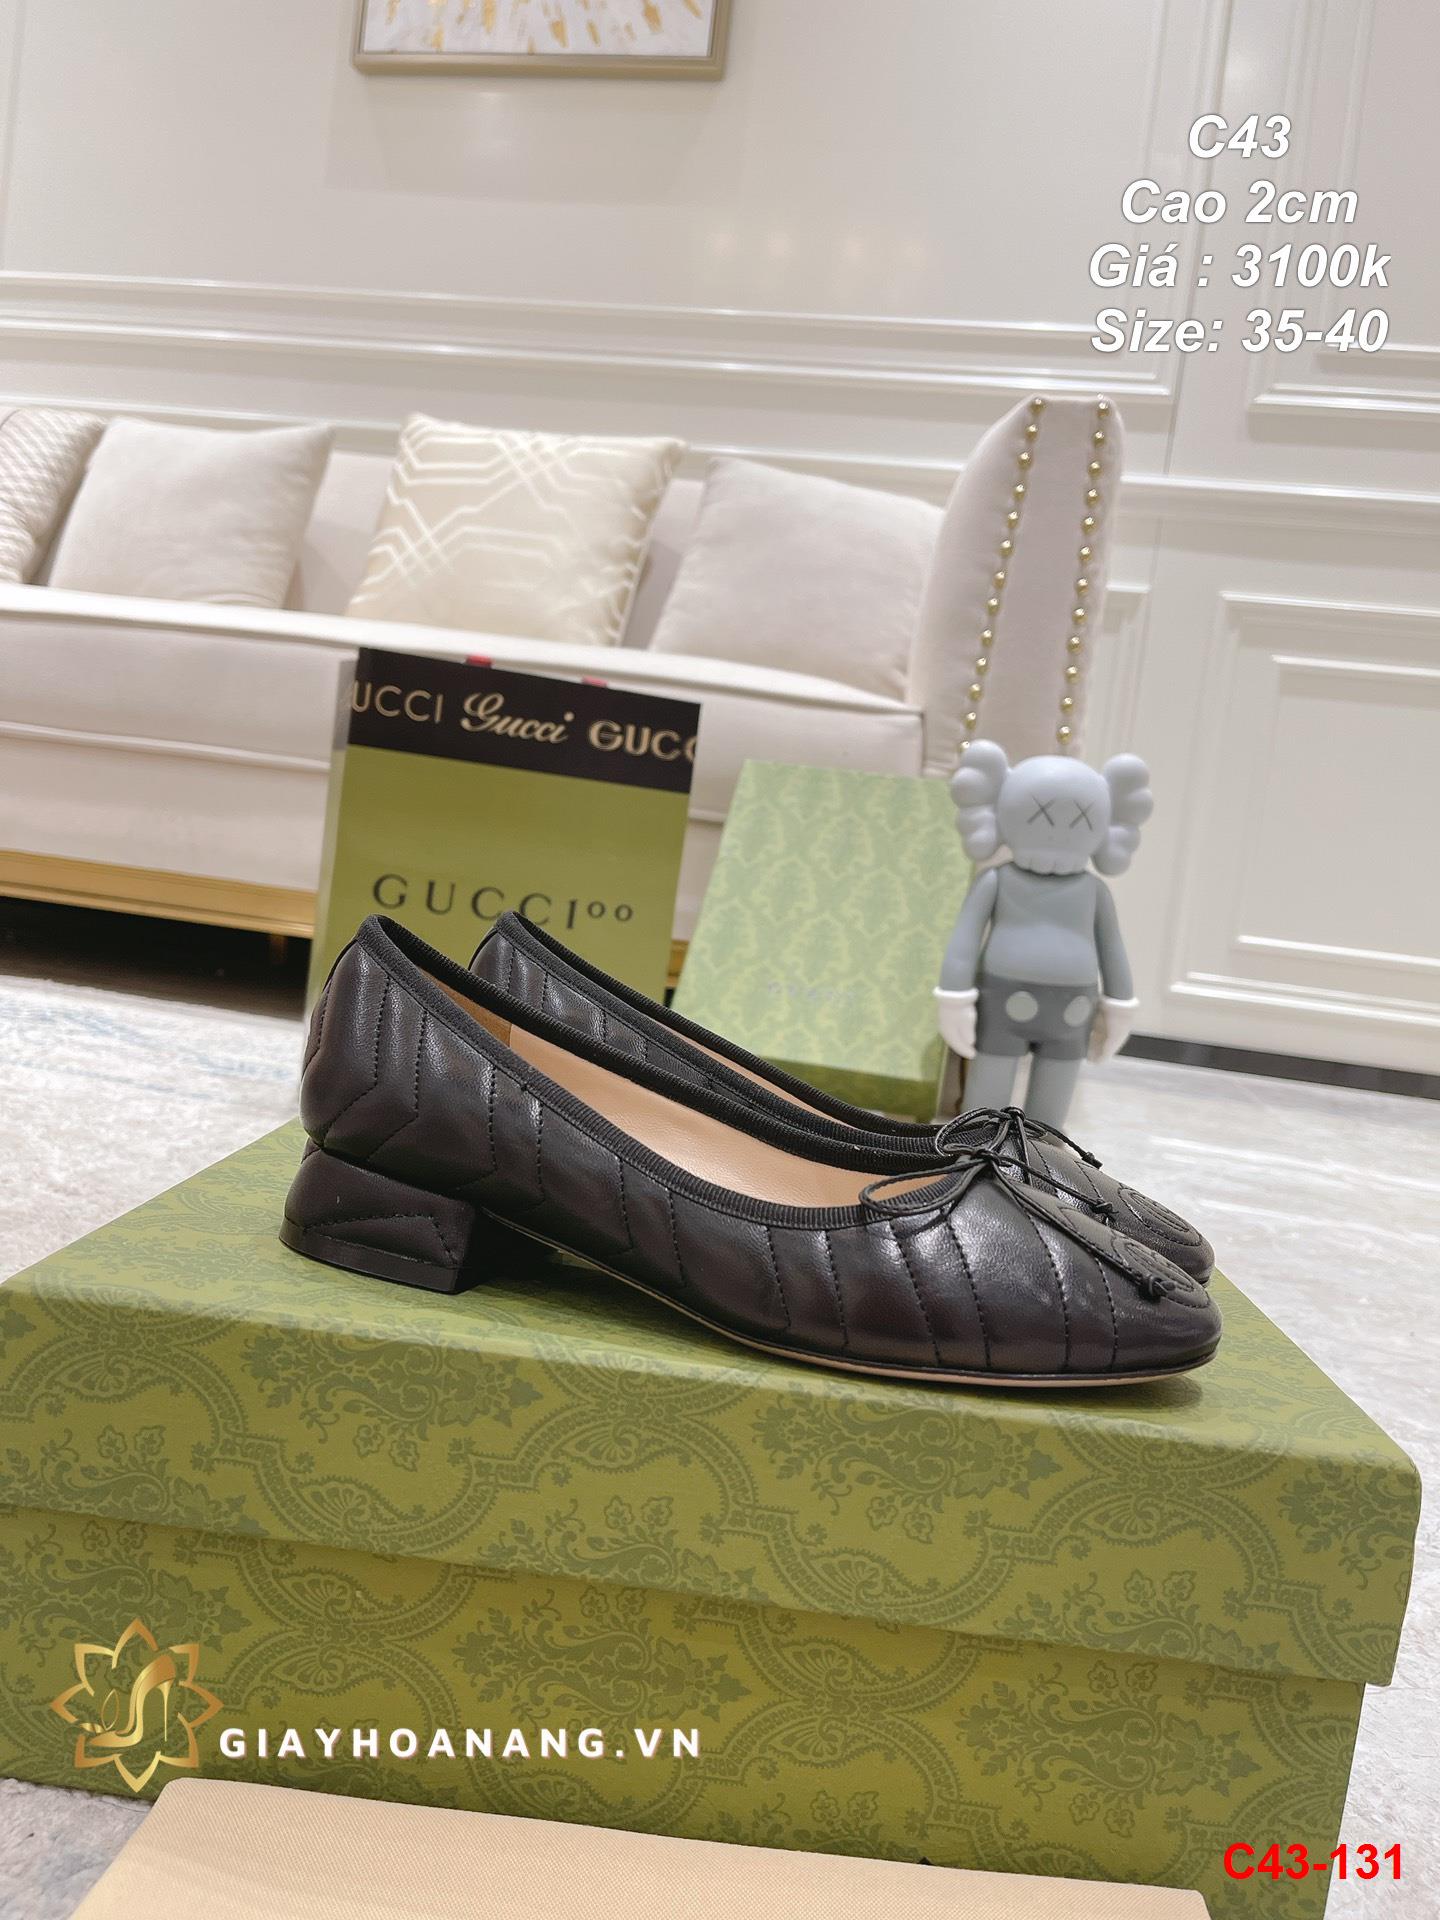 C43-131 Gucci giày cao 2cm siêu cấp